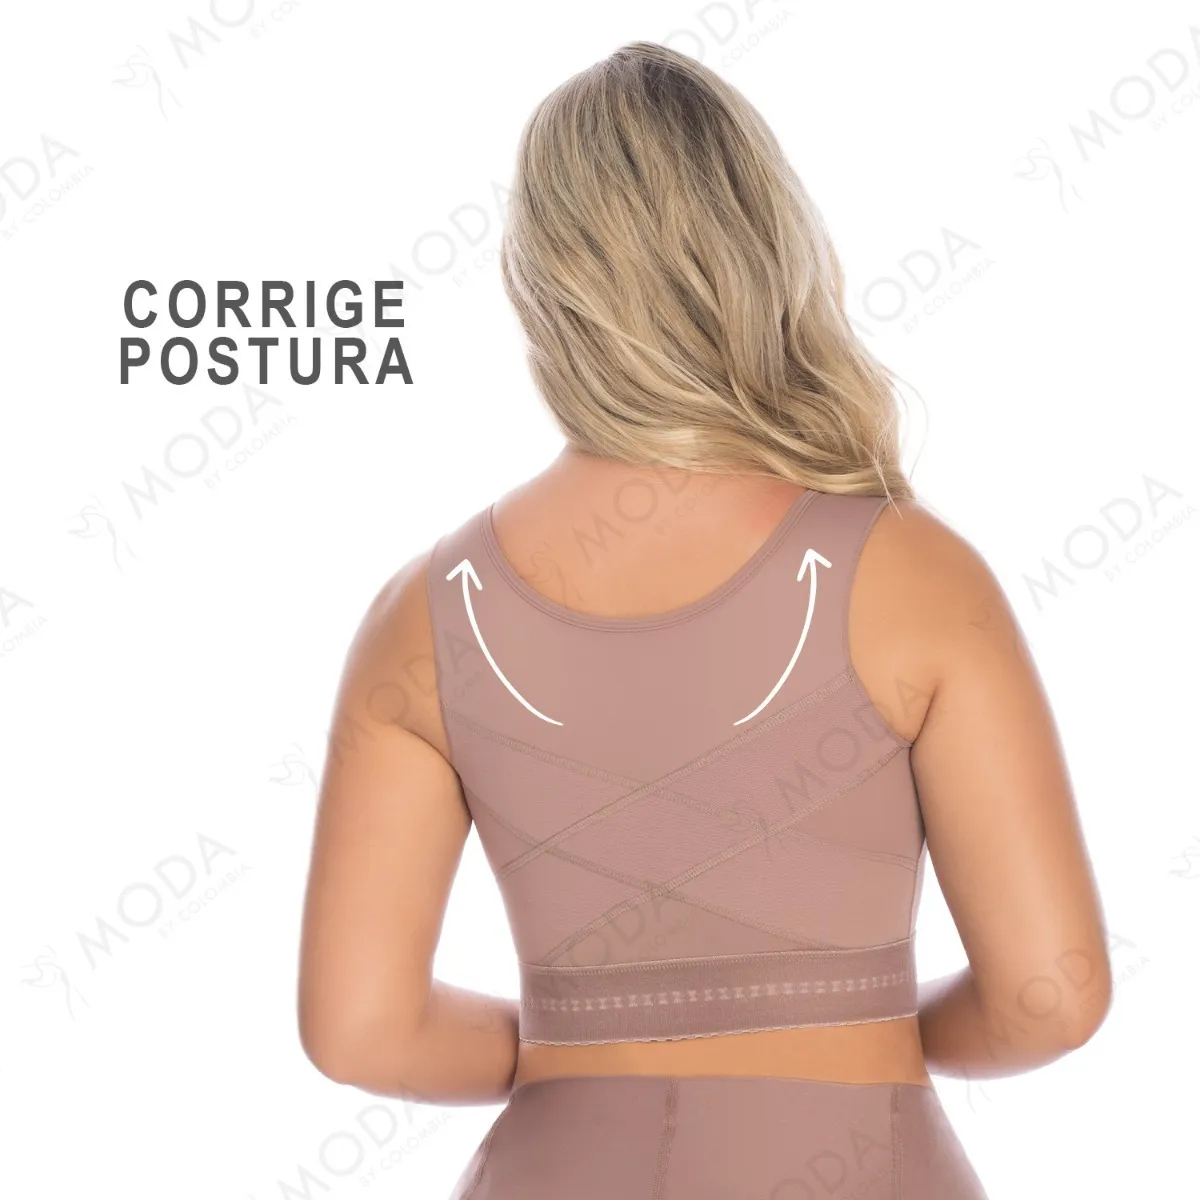 Brasier postoperatorio colombiano, que ayuda a tu postura y moldea tu torso superior. De alto cubrimiento en la espalda y costados.